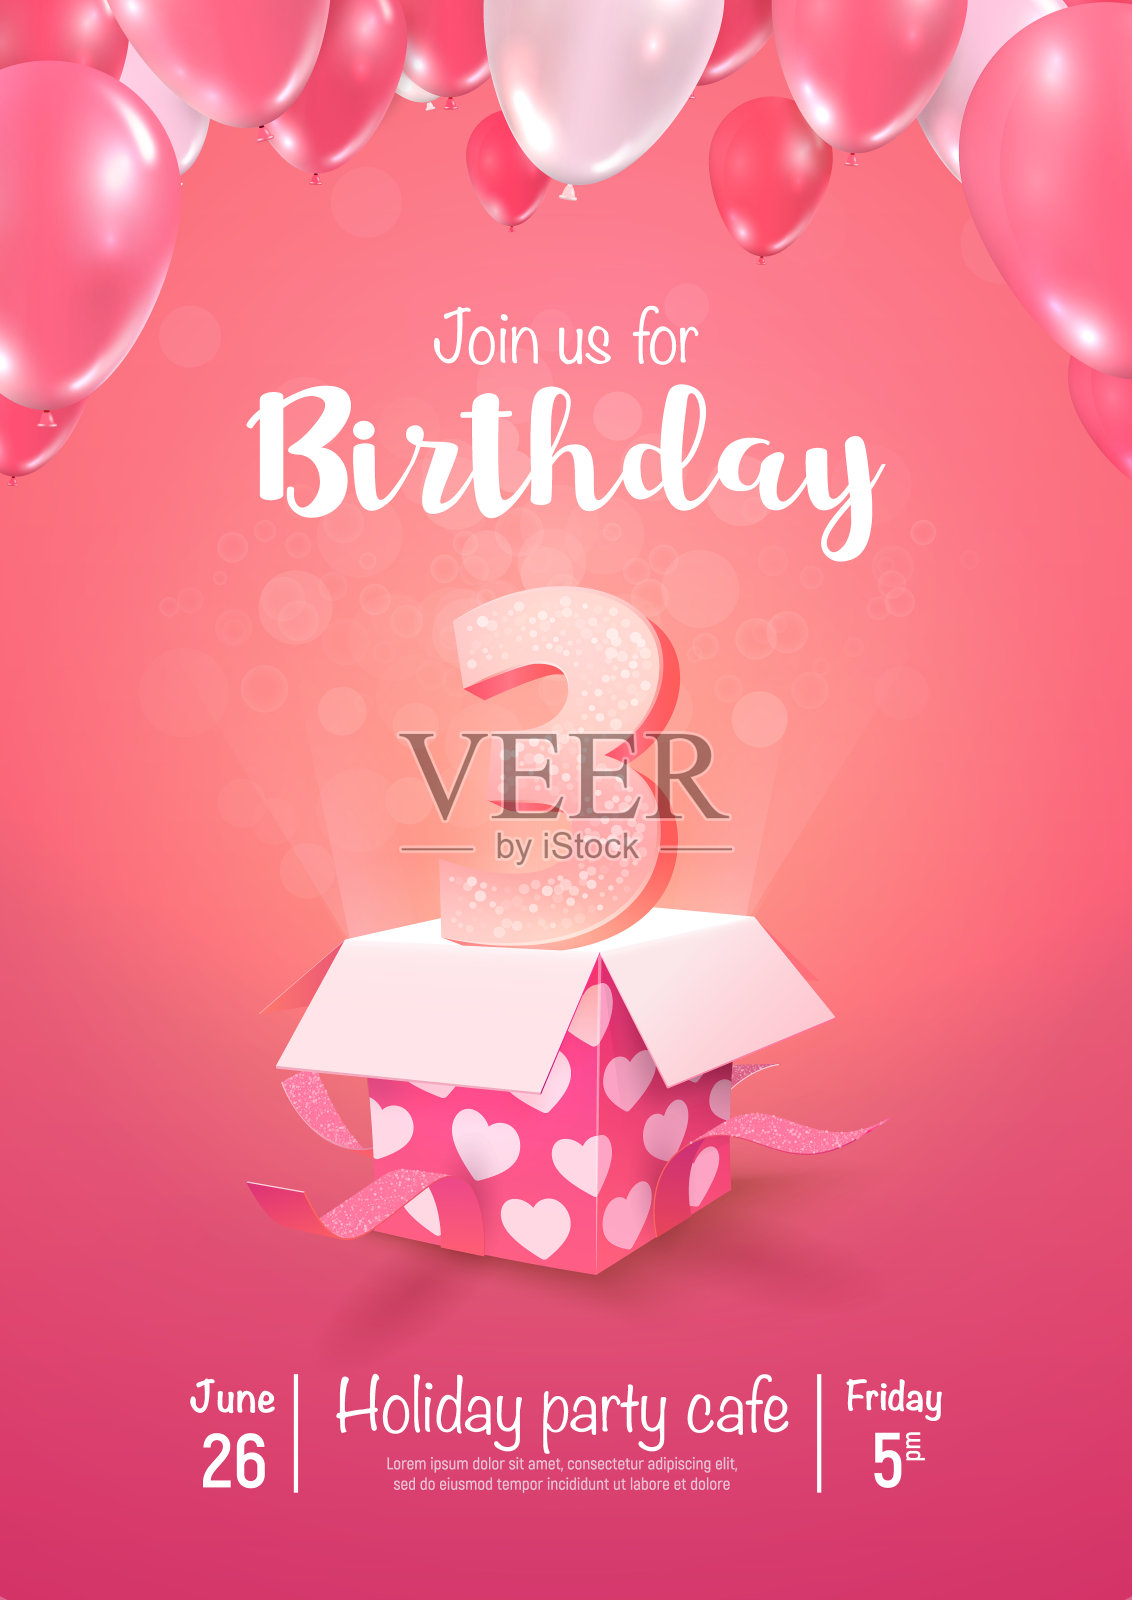 庆祝3年生日矢量3d插图在软背景。三周年庆典和打开礼品盒气球海报模板设计模板素材